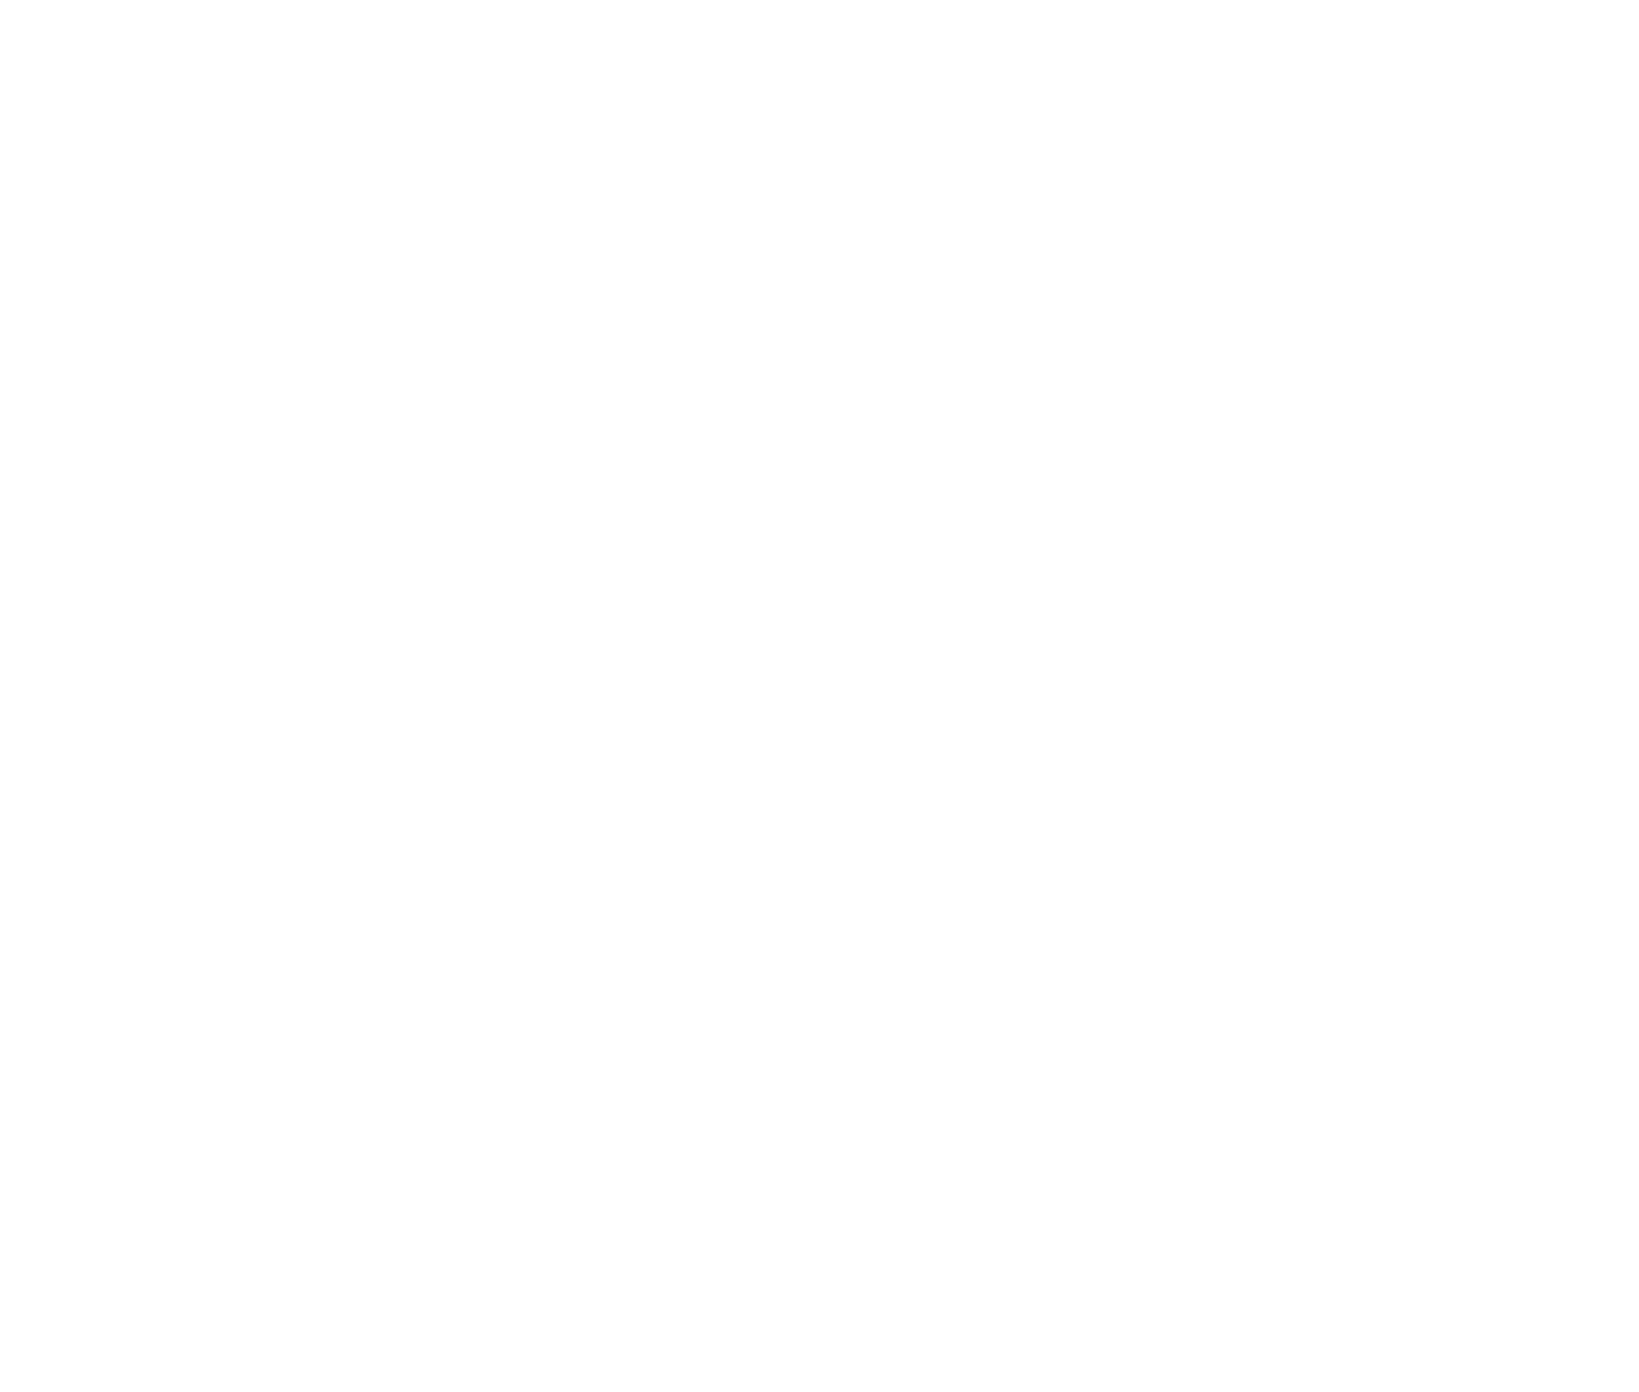 stark solid concrete white logo